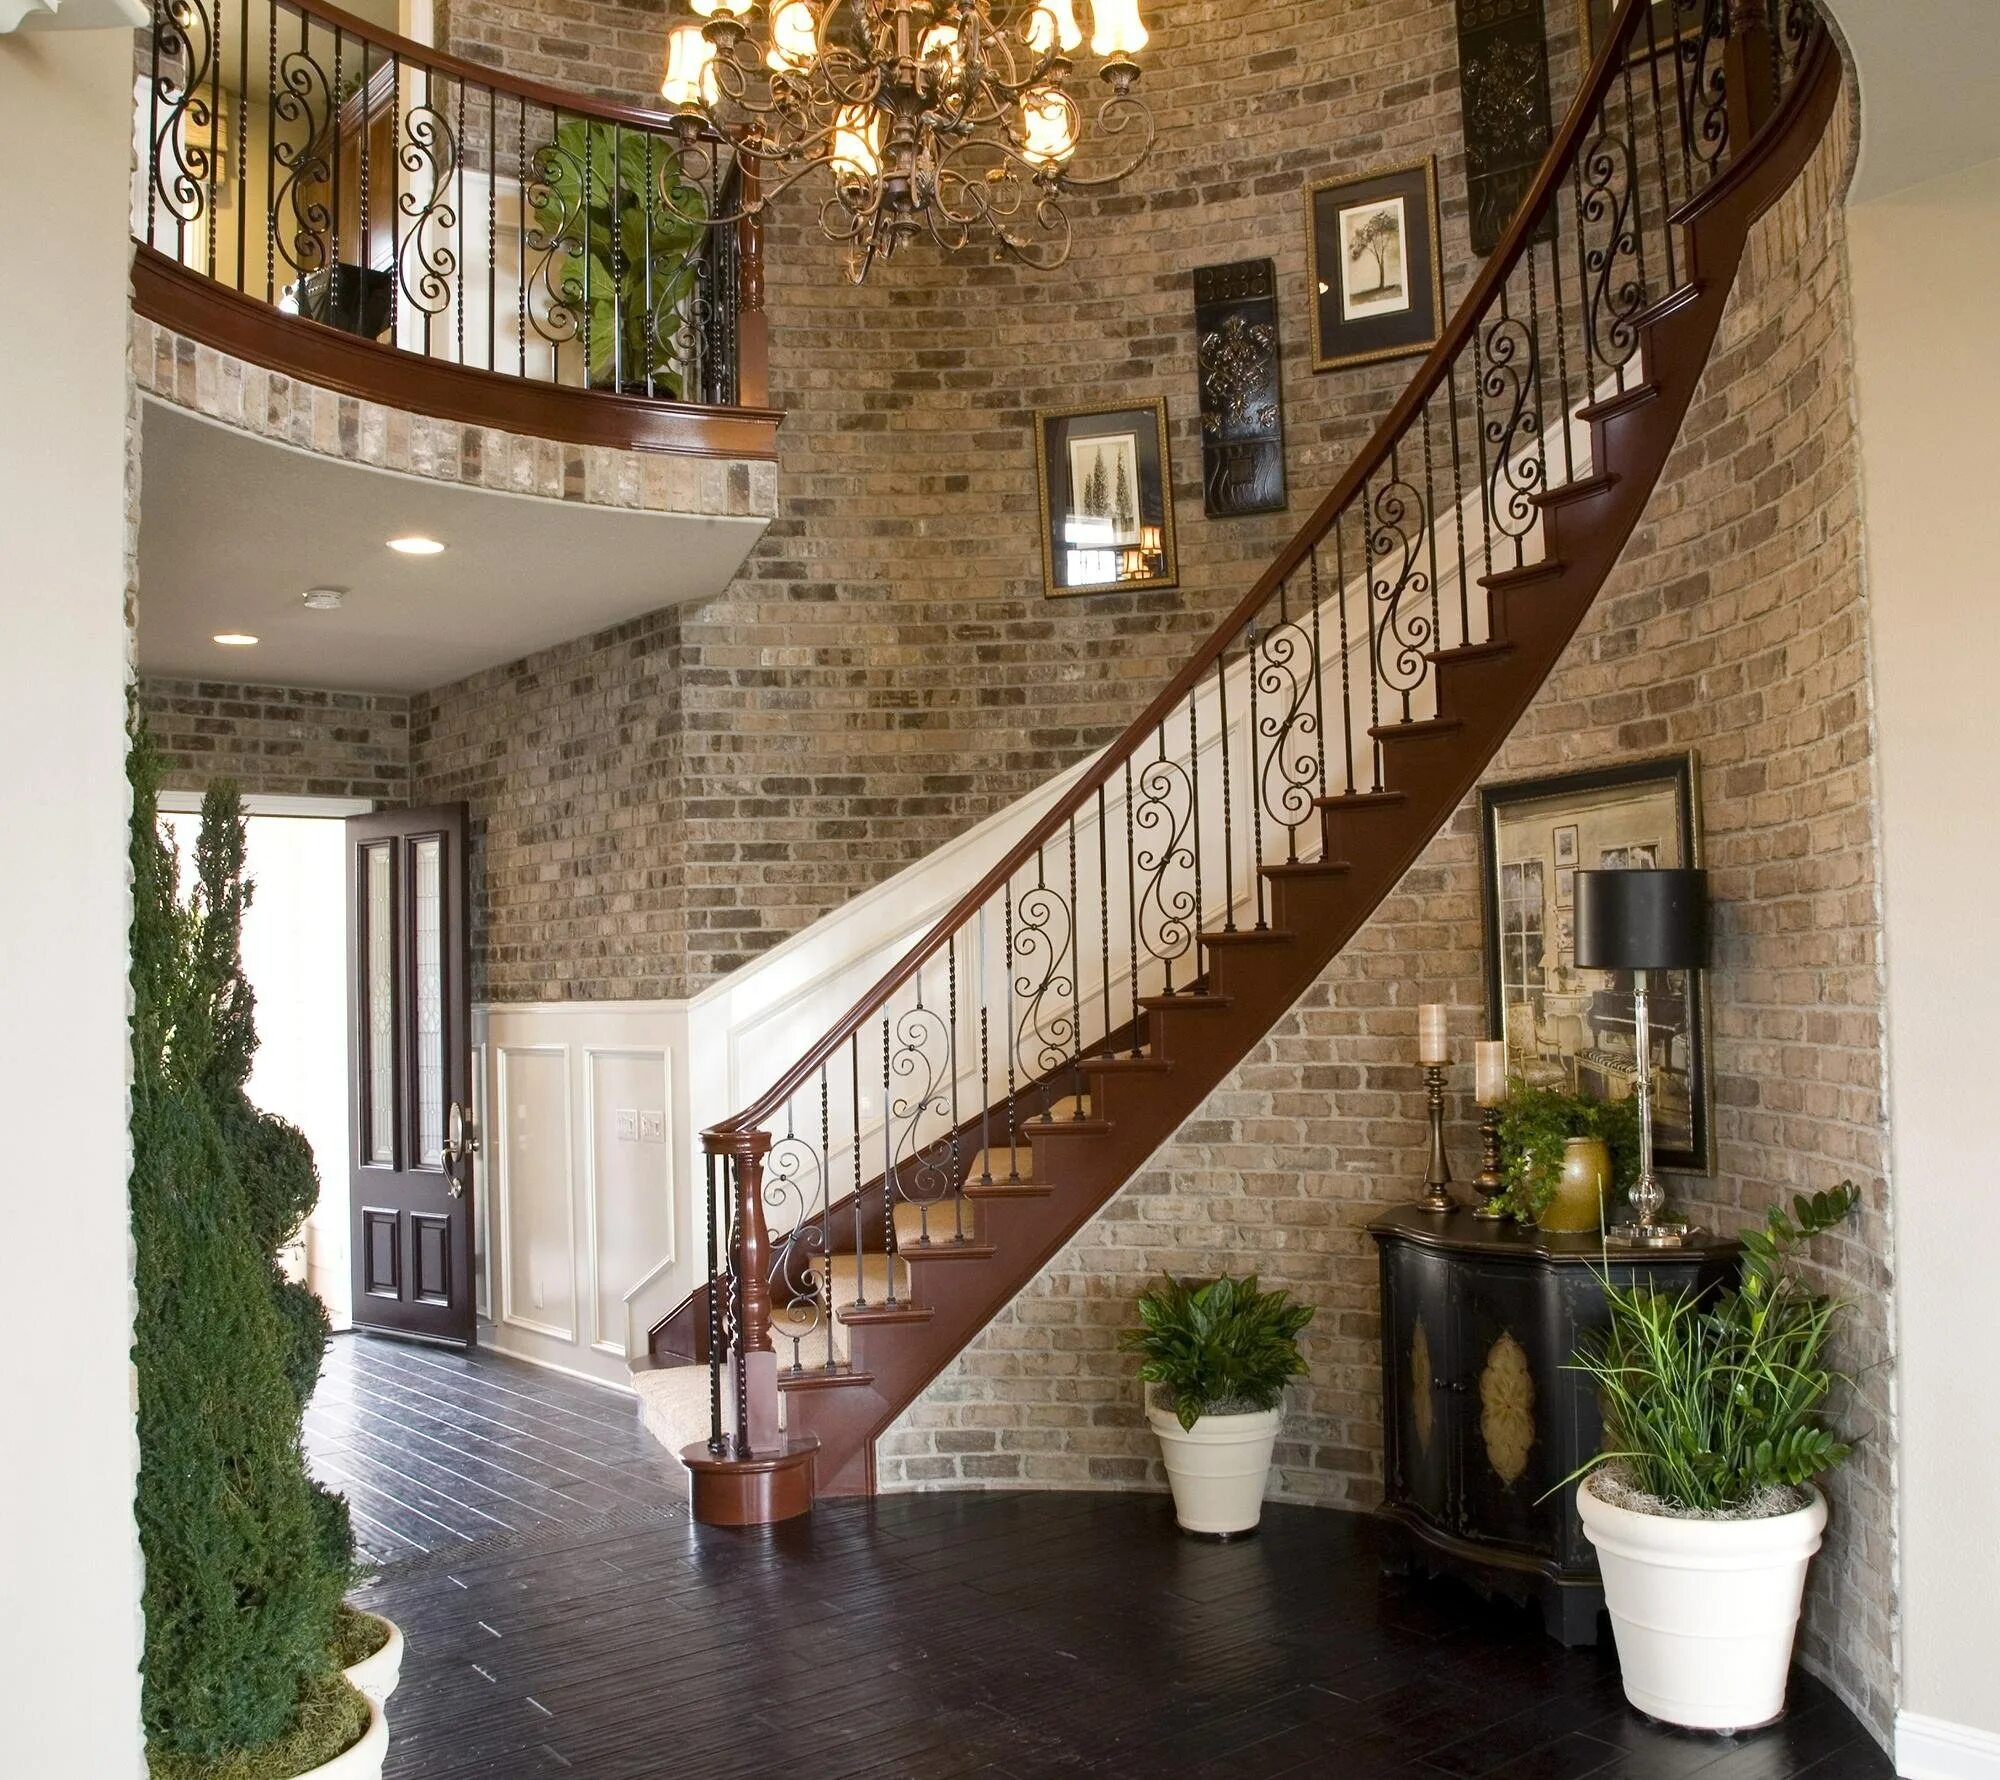 Пролет стены. Лестница в доме. Лестница в интерьере. Лестница в коттедже. Интерьер лестницы в частном доме.